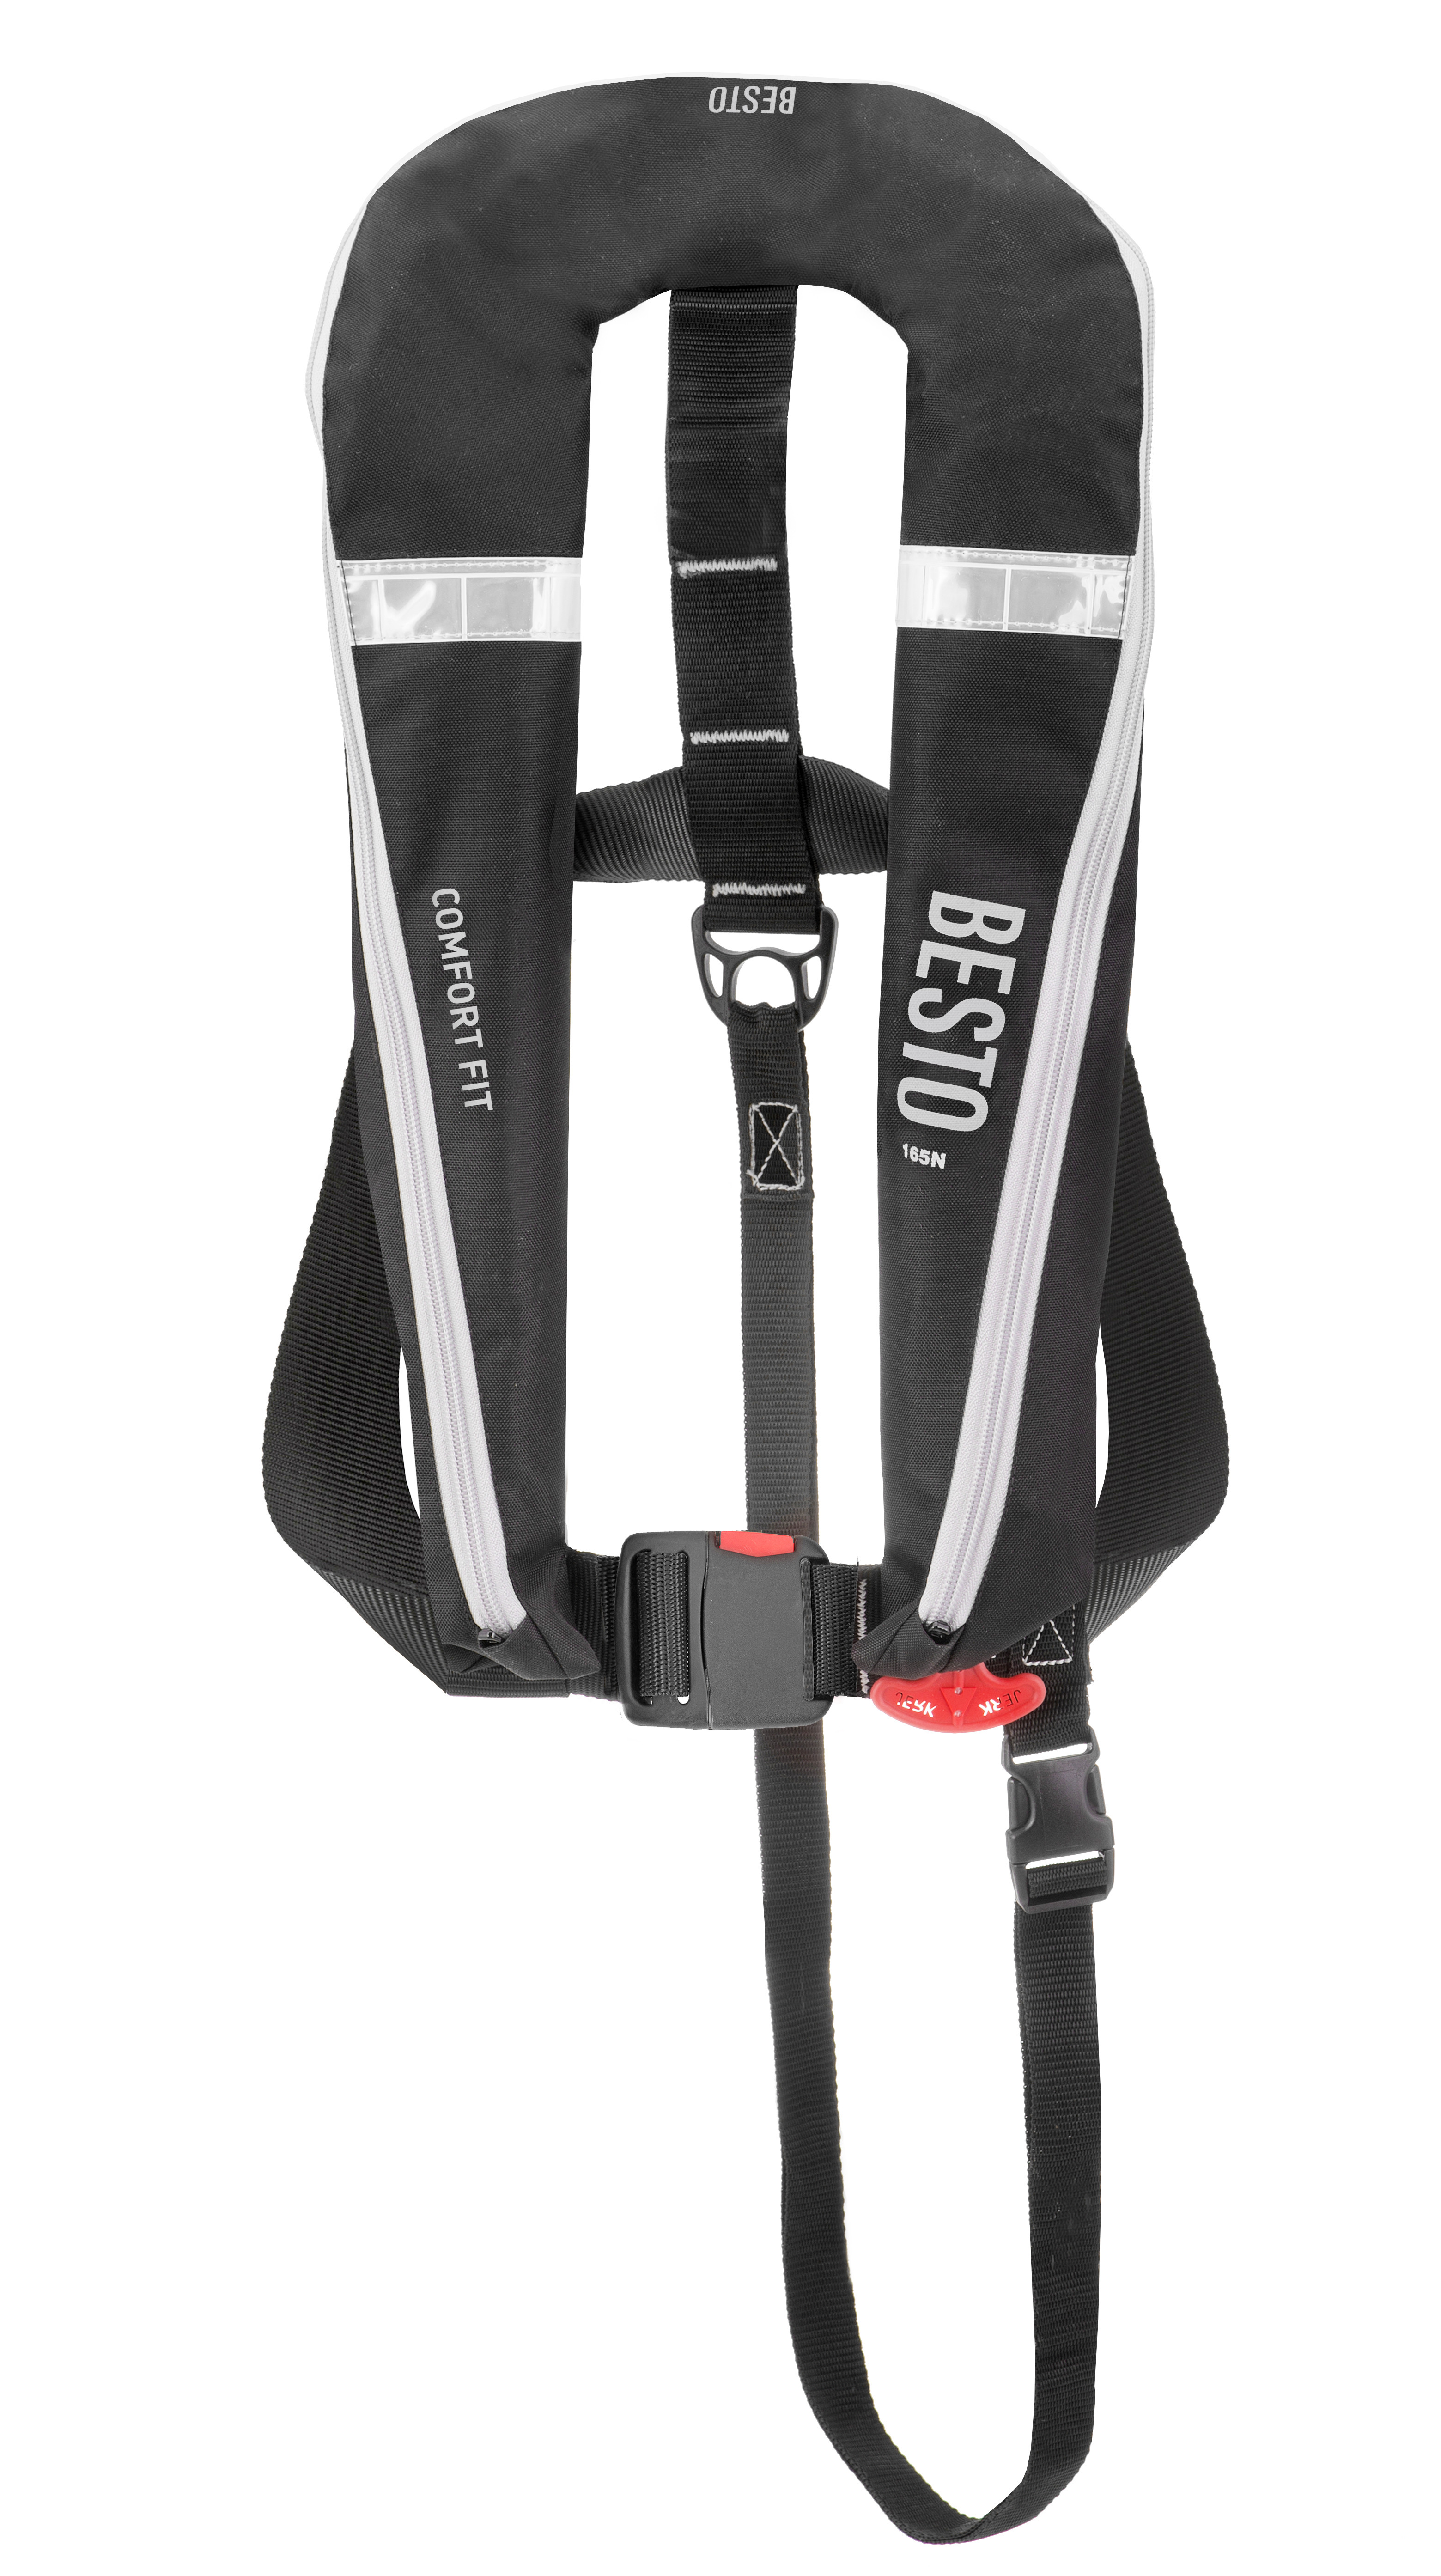 Schwimmweste Comfort fit 180N schwarz -grau - ohne Sicherheitsgurt